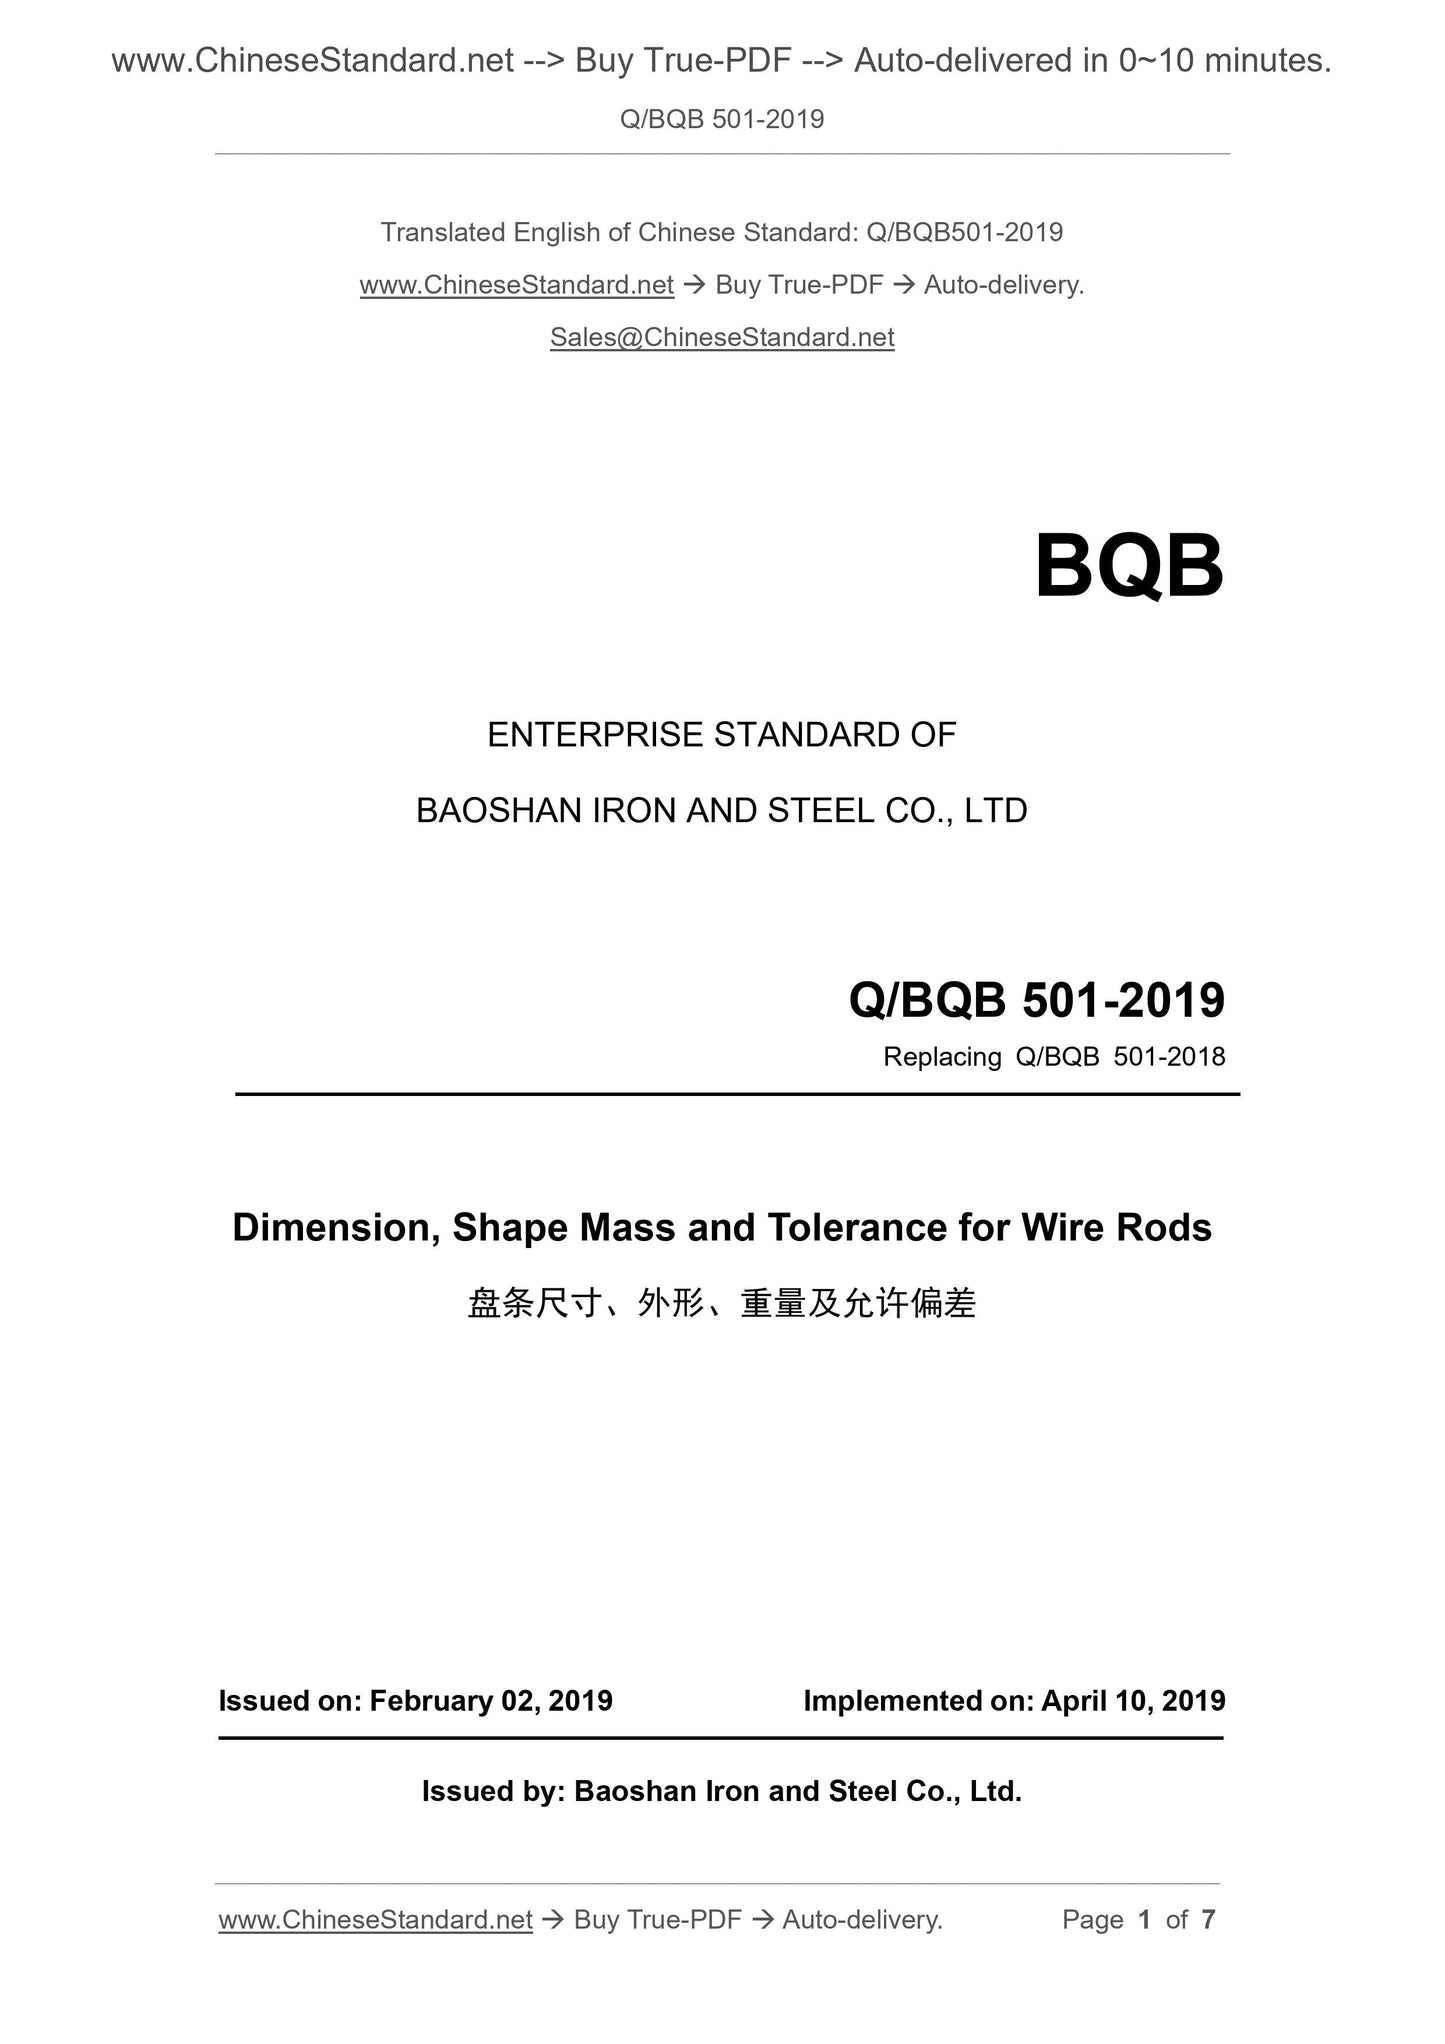 Q/BQB 501-2019 Page 1